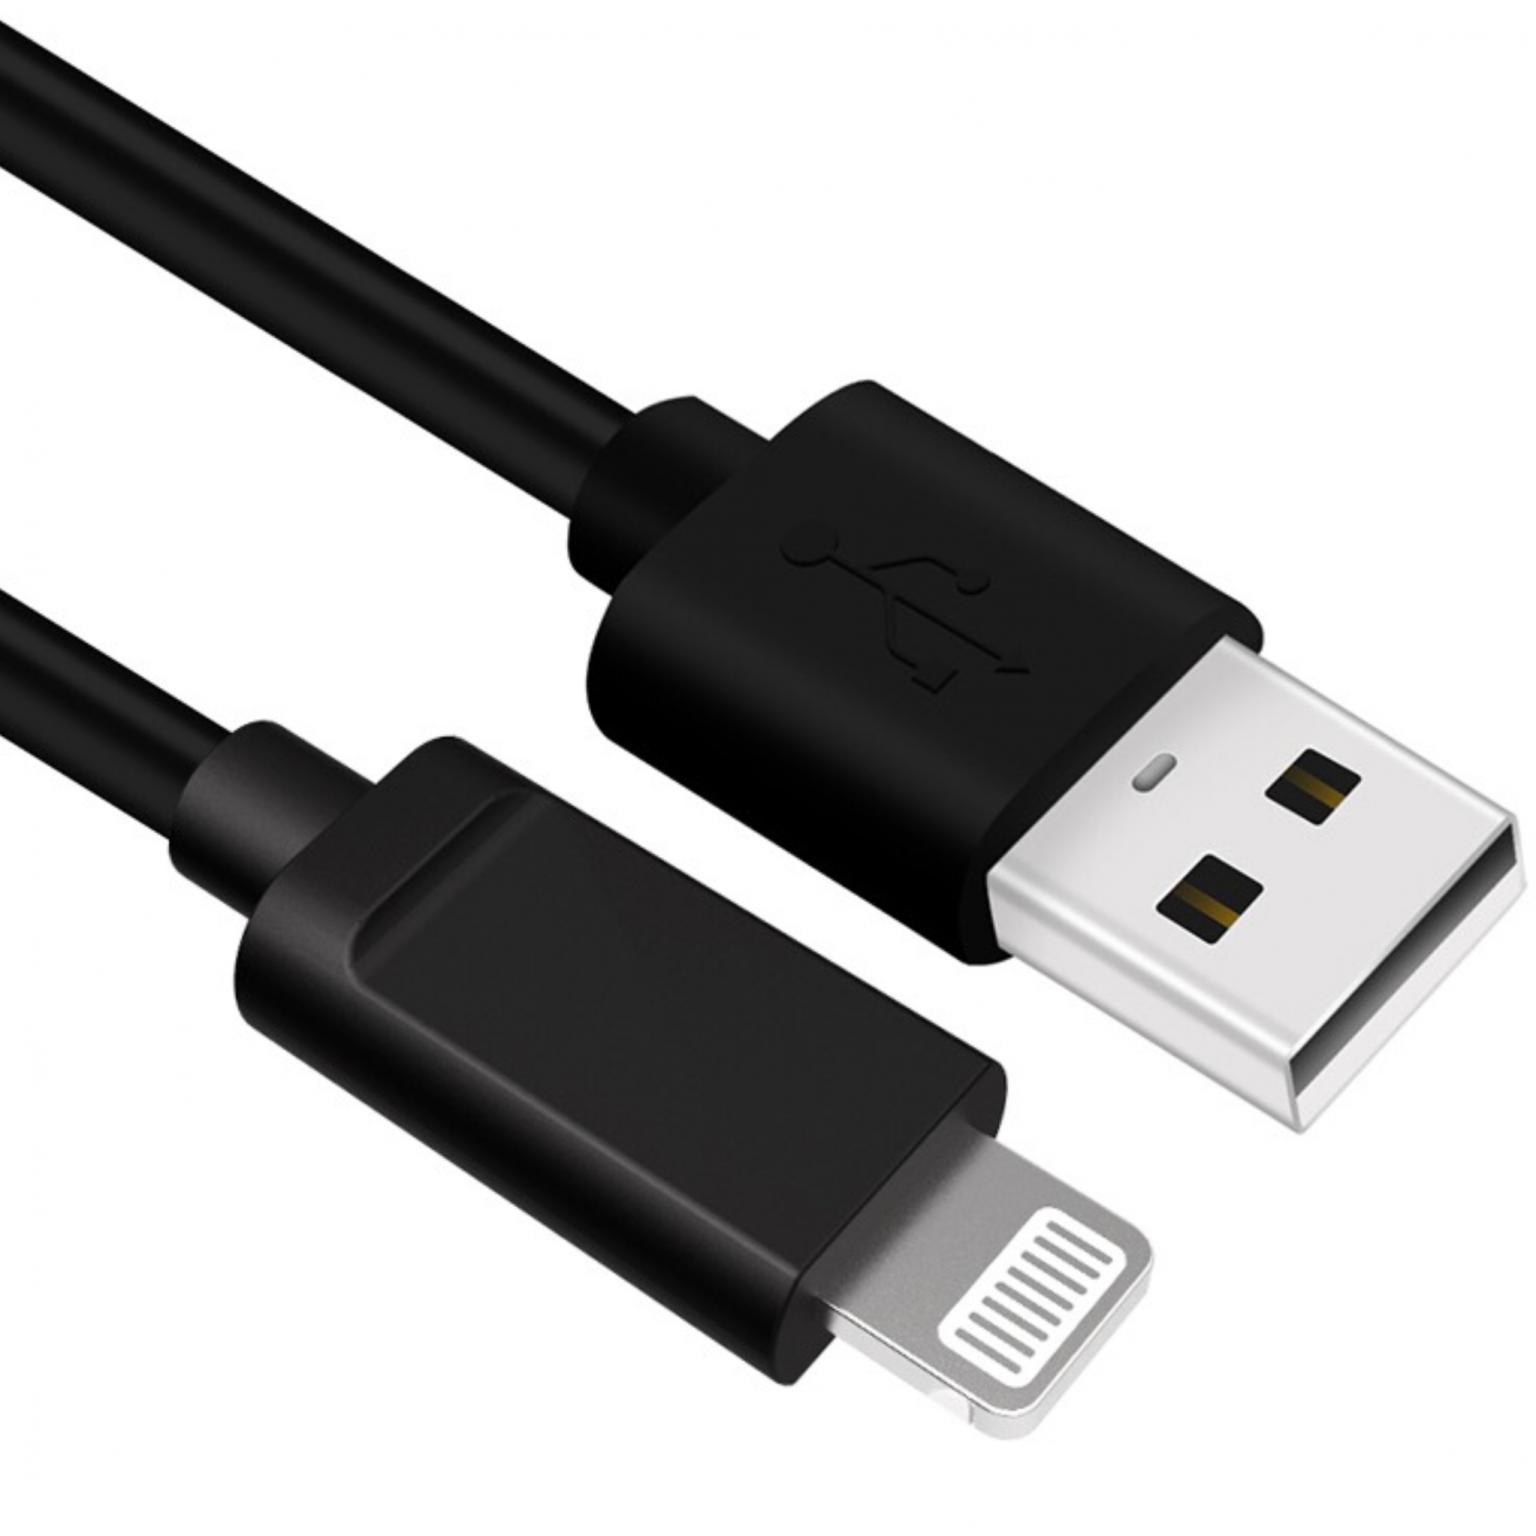 Besluit Instrument Incubus USB A naar Lightning kabel - 2.0 - Extra: MFI gecertificeerd Aansluiting 1:  USB A male, Aansluiting 2: Lightning male, Lengte: 1 meter.